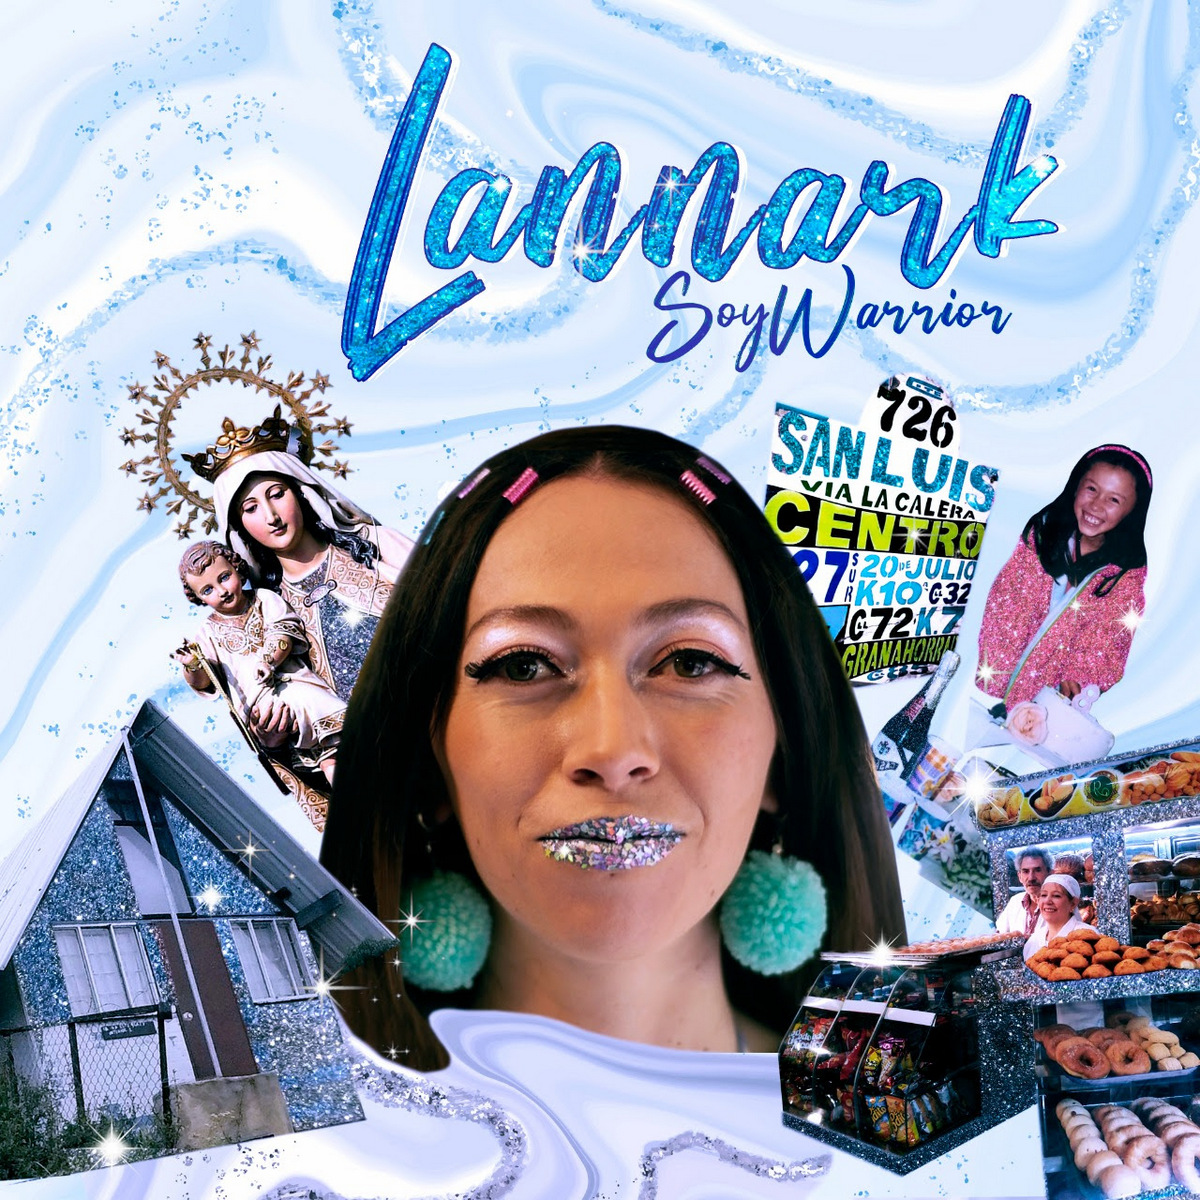 Lannark lanza ‘Soy warrior’, una canción de empoderamiento femenino inspirada en el barrio